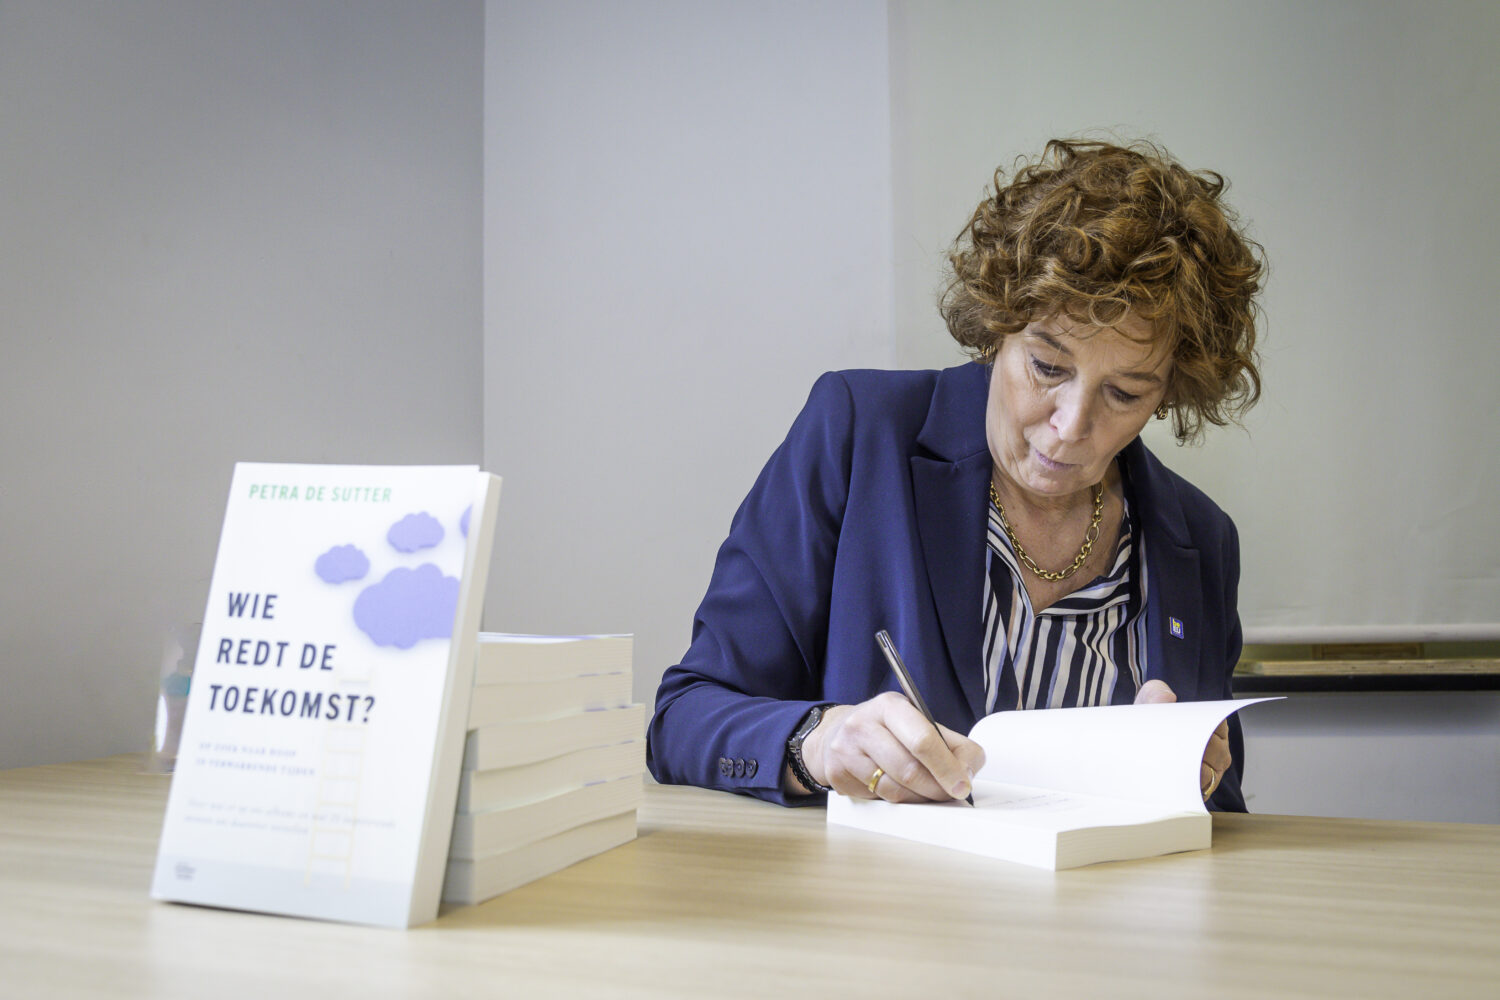 Petra De Sutter stelt boek “Wie redt de toekomst?” voor in Ninove